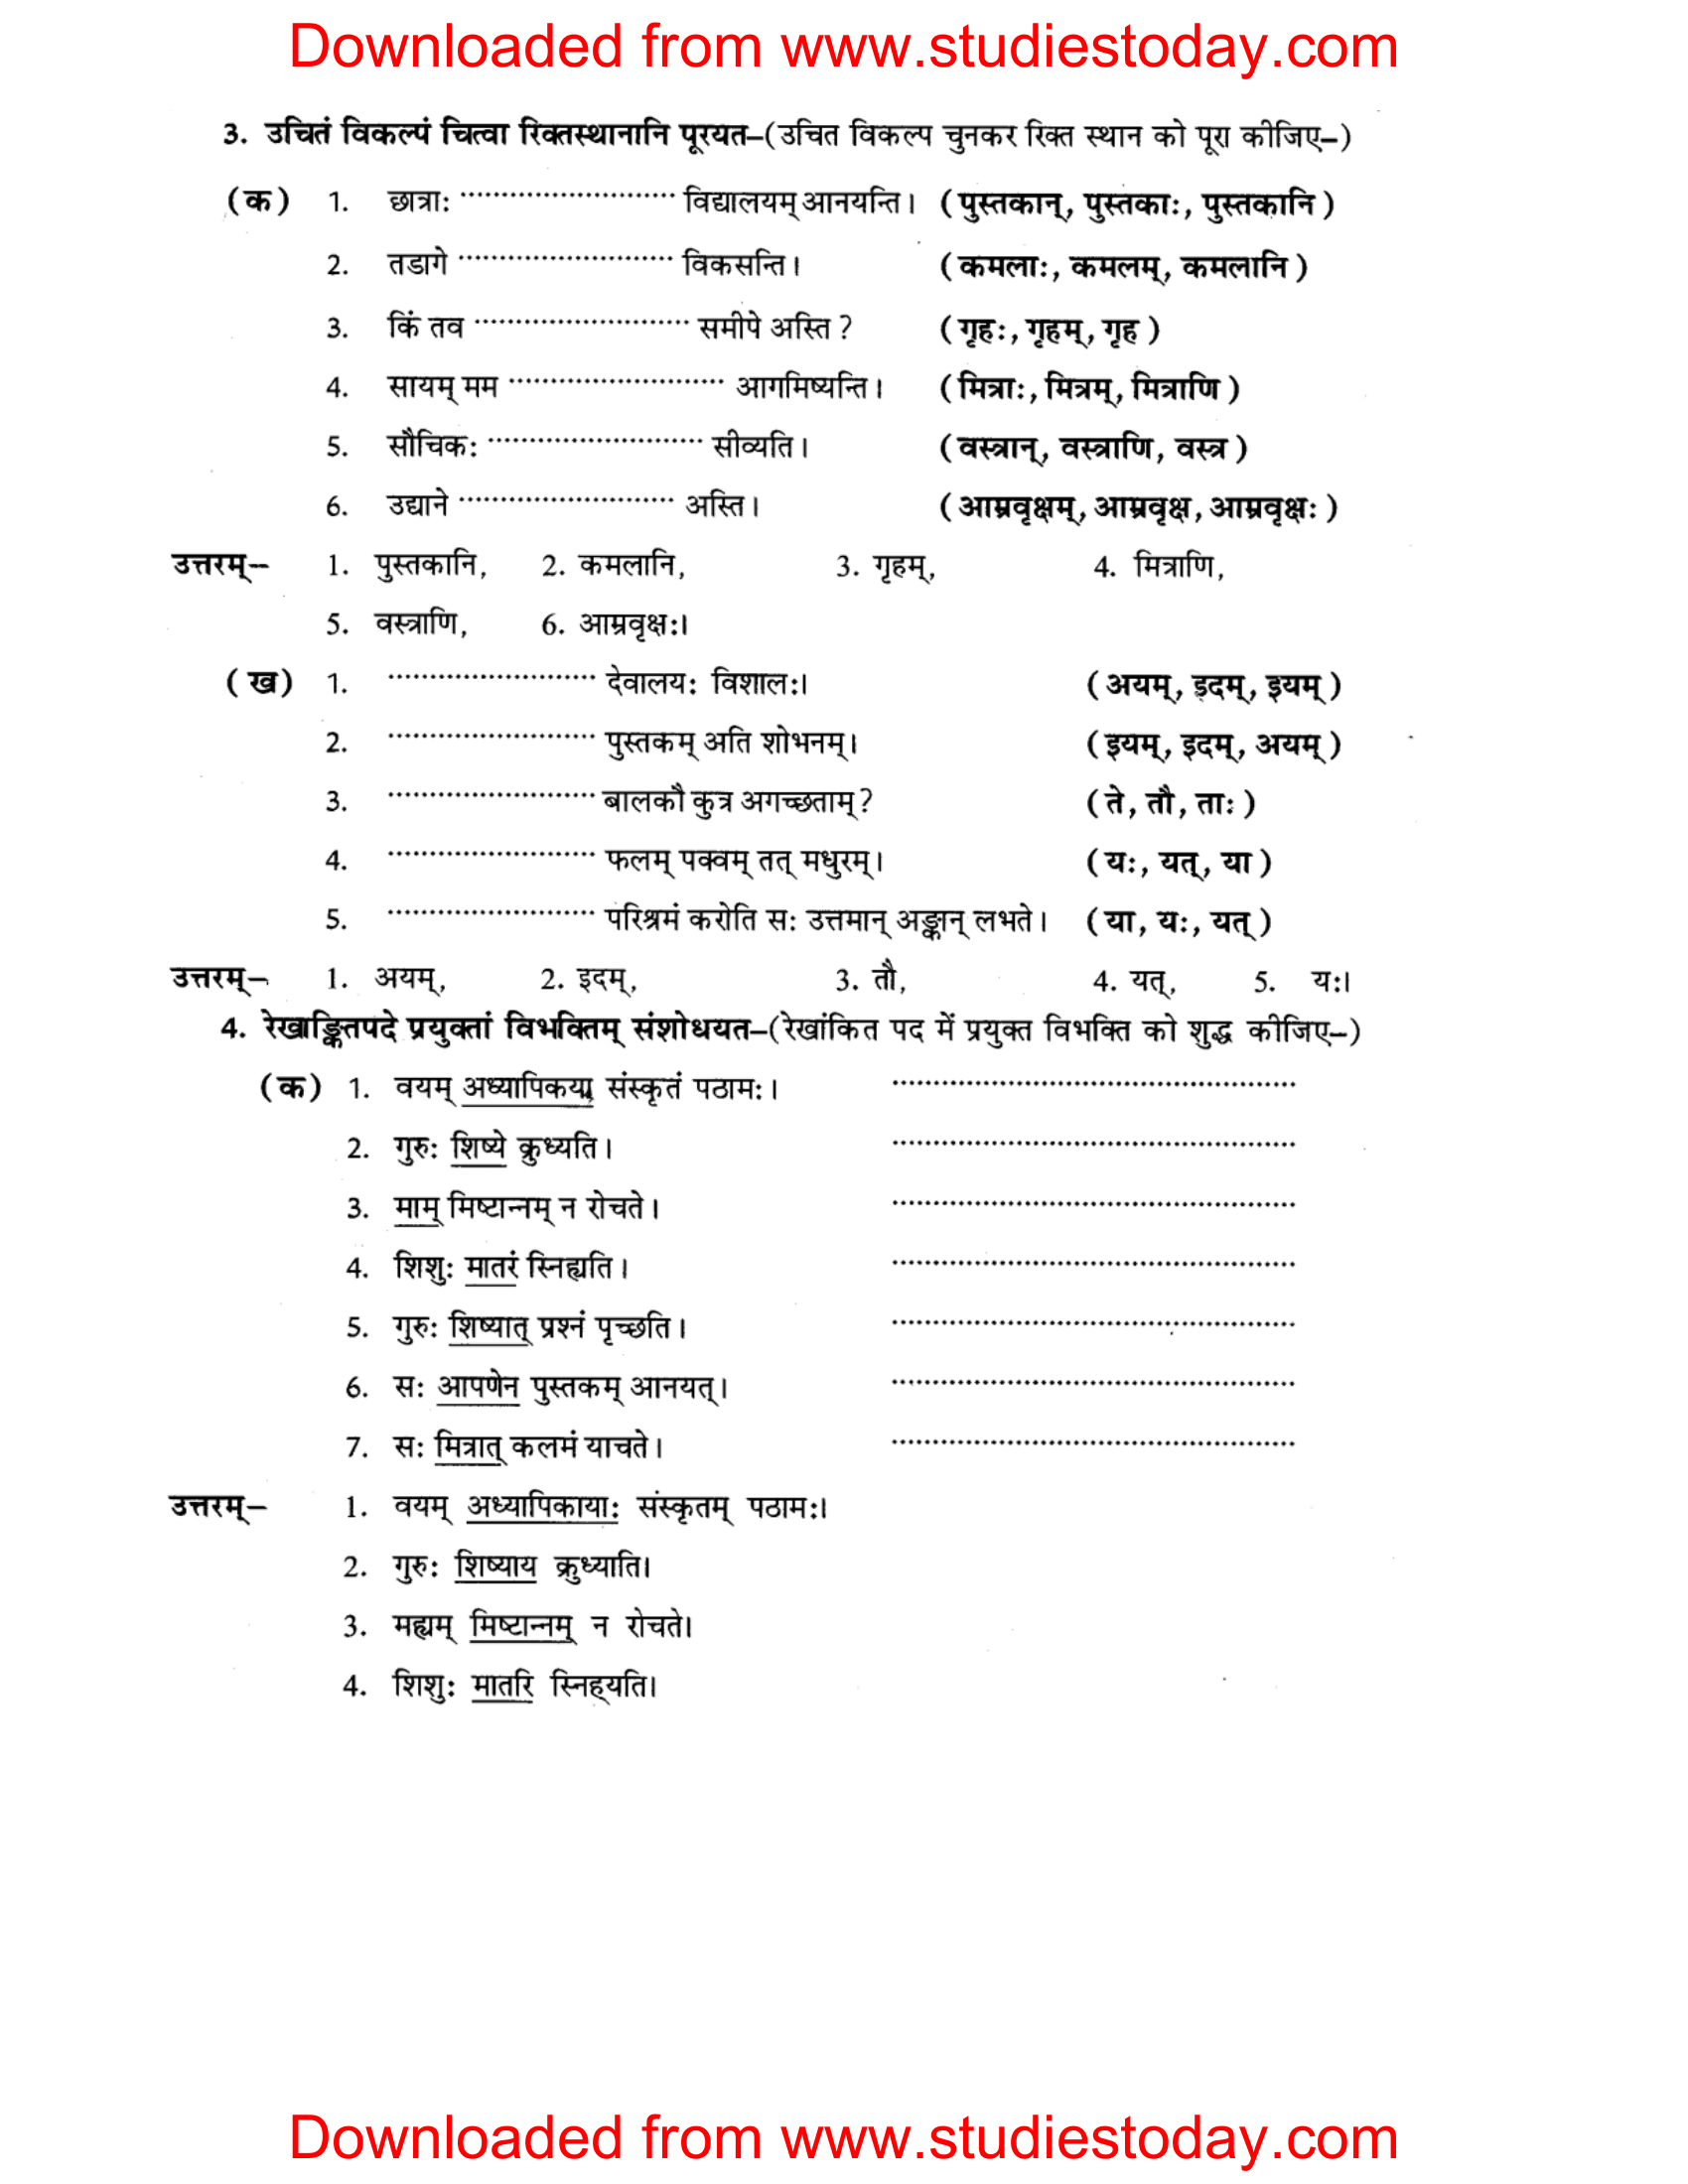 ncert-solutions-class-8-sanskrit-chapter-10-vakyarachna-sudhpryog-2